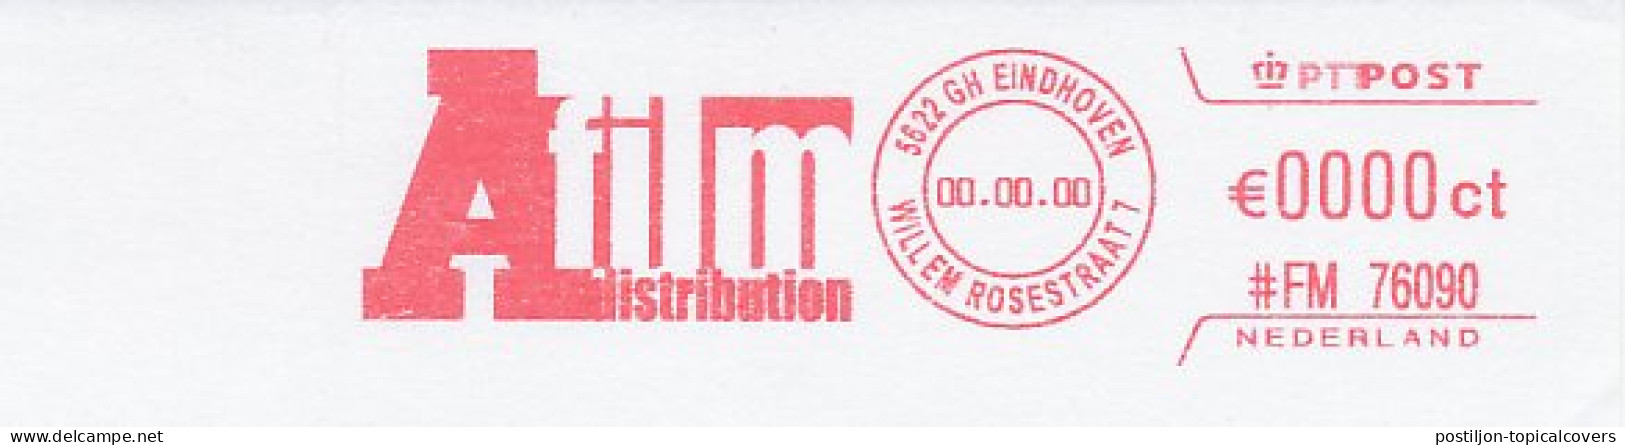 Meter Proof / Test Strip FRAMA Supplier Netherlands A Fiml Distribution - Cinema